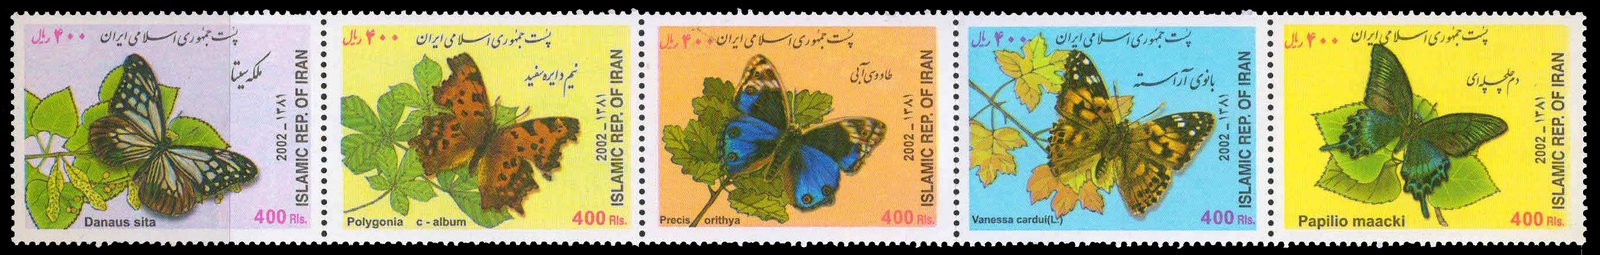 IRAN 2002-Butterflies, Set of 5, MNH, S.G. 3077-3081-Cat � 5.50